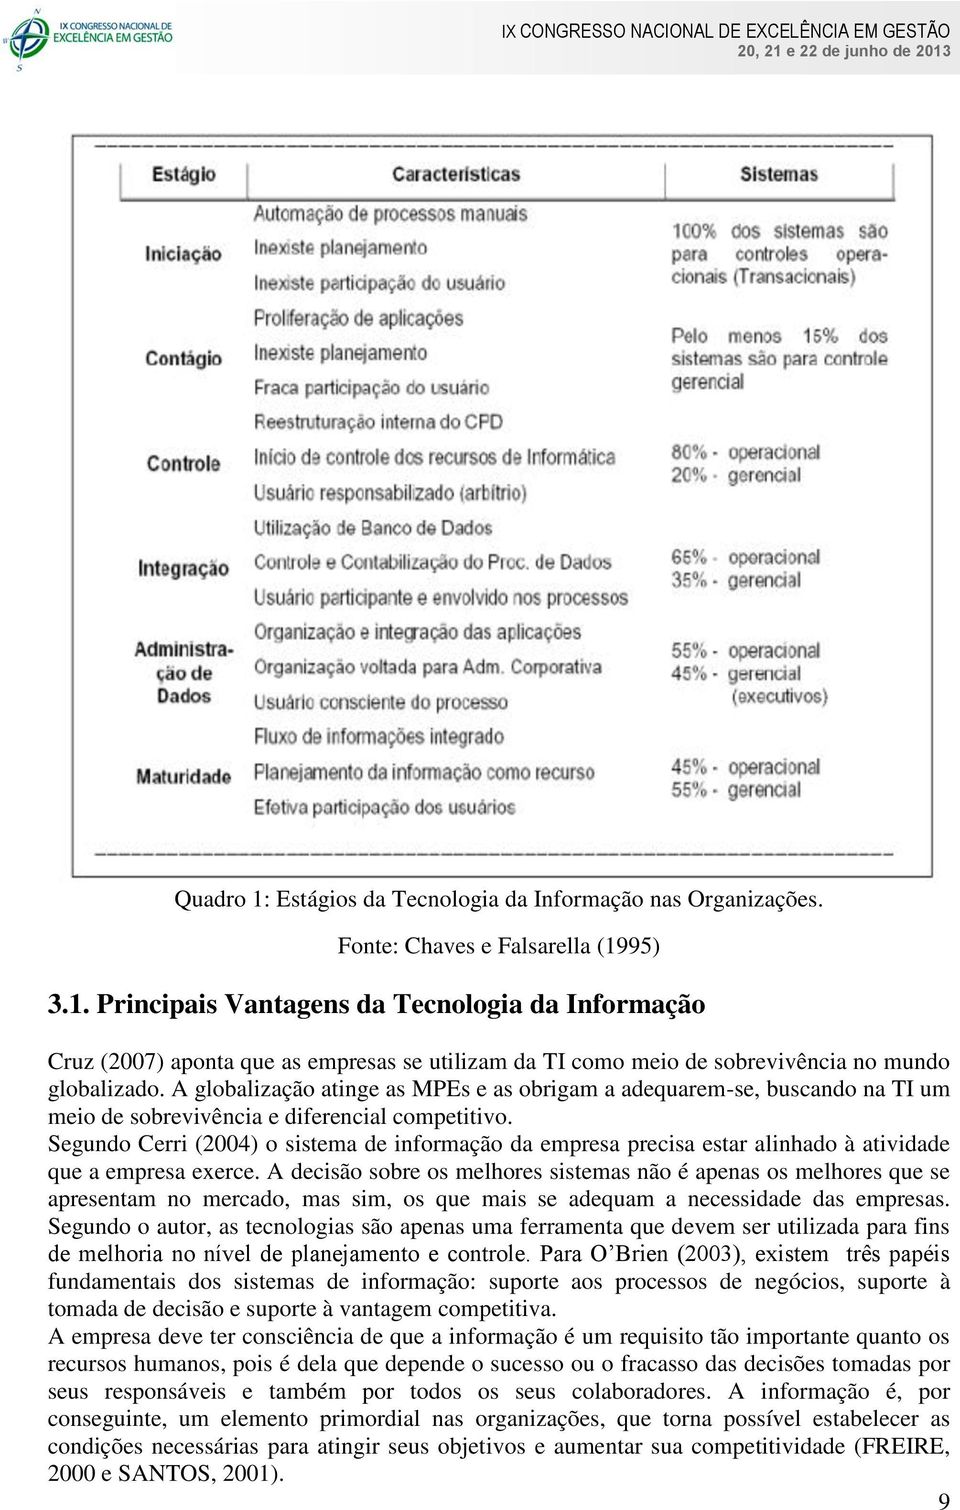 Segundo Cerri (2004) o sistema de informação da empresa precisa estar alinhado à atividade que a empresa exerce.